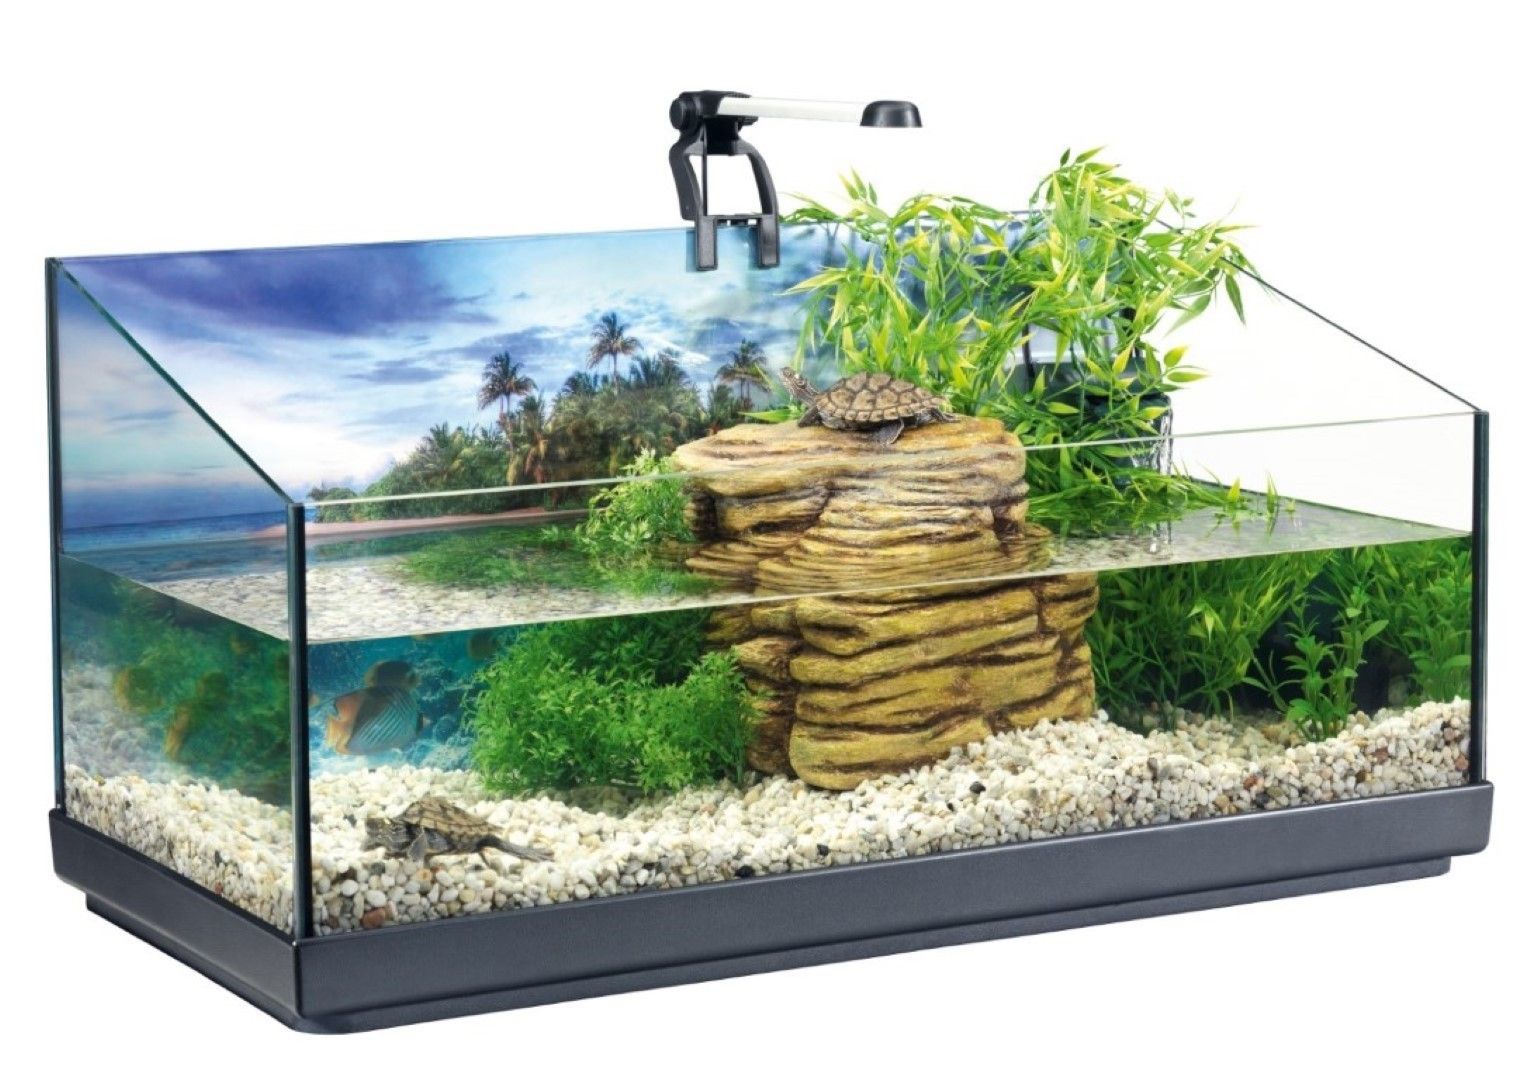 Repto aqua set 76 cm Inhalt 40 Liter Fisch Gebr. de Boon Tetra